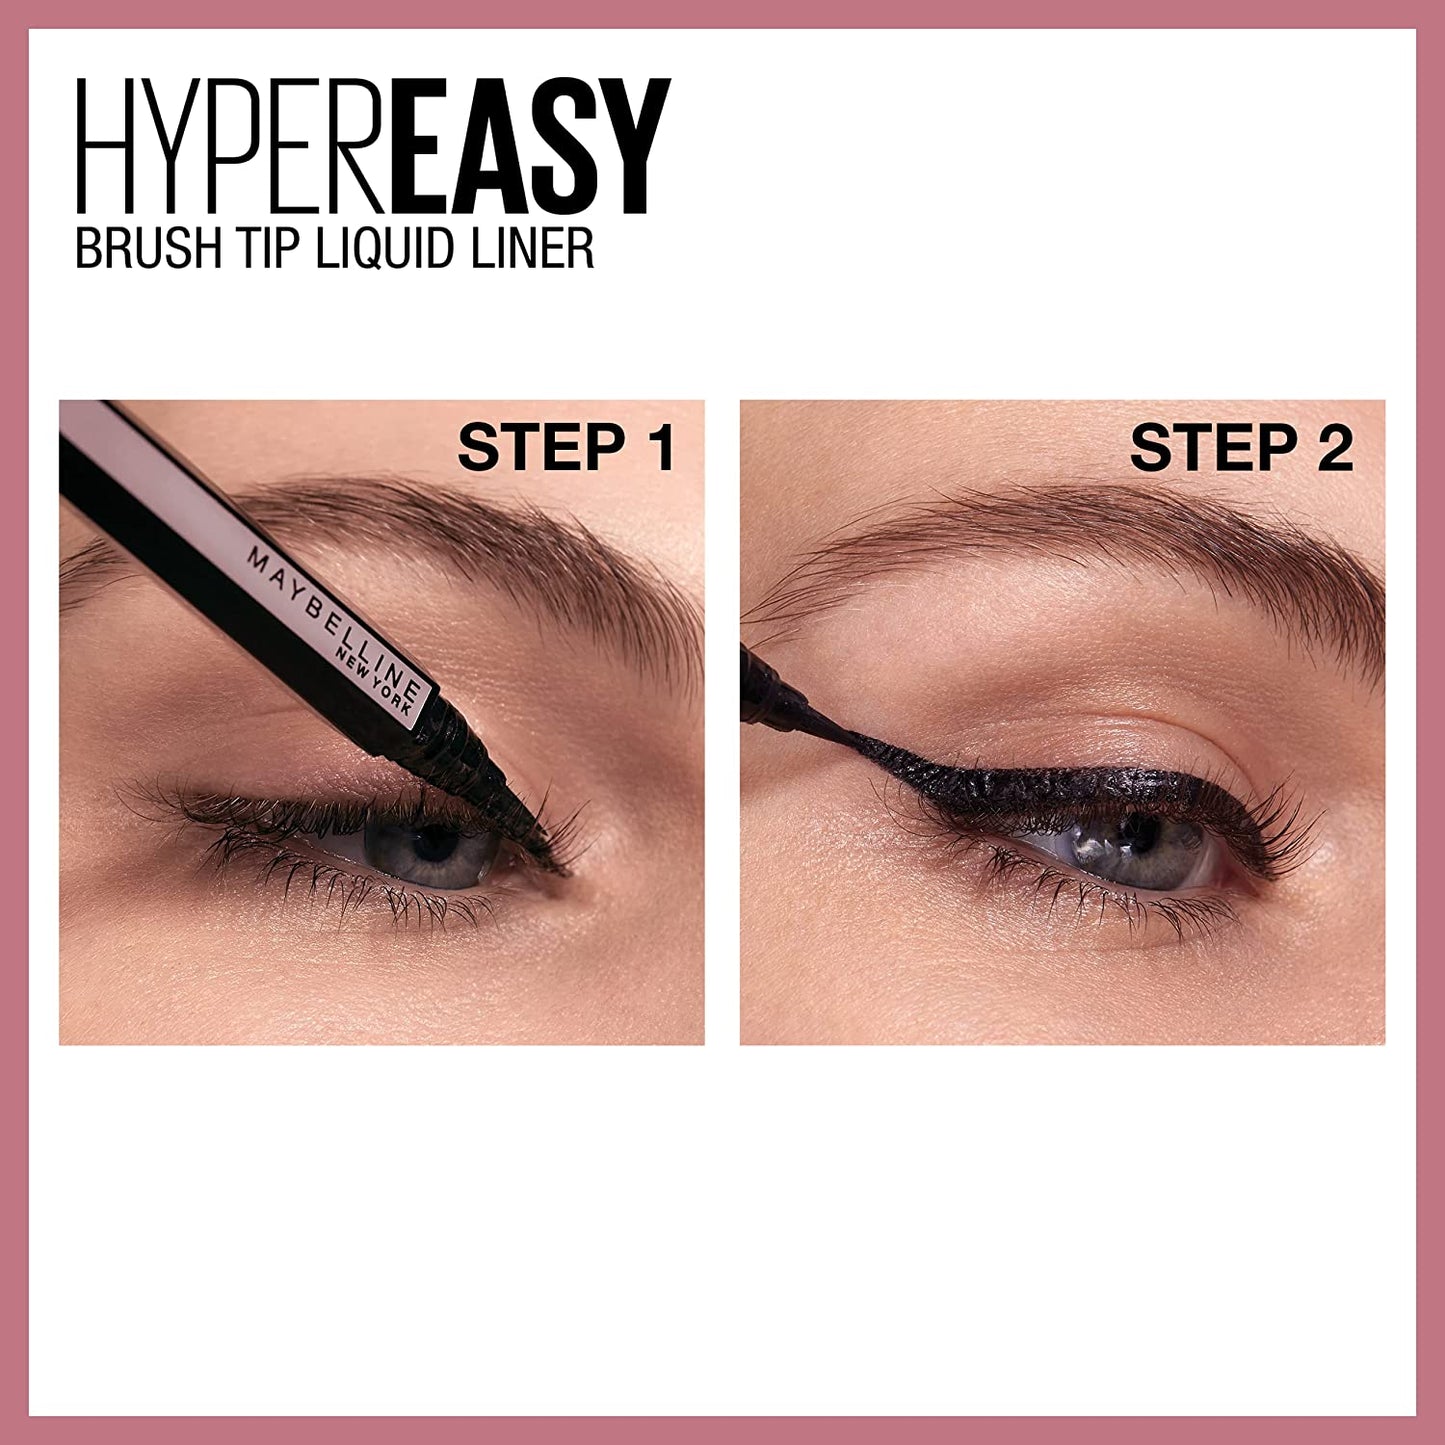 Lash Sensational Sky High Washable Mascara + Hyper Easy Liquid Eyeliner Makeup Bundle, Includes 1 Mascara in Blackest Black and 1 Eyeliner in Pitch Black